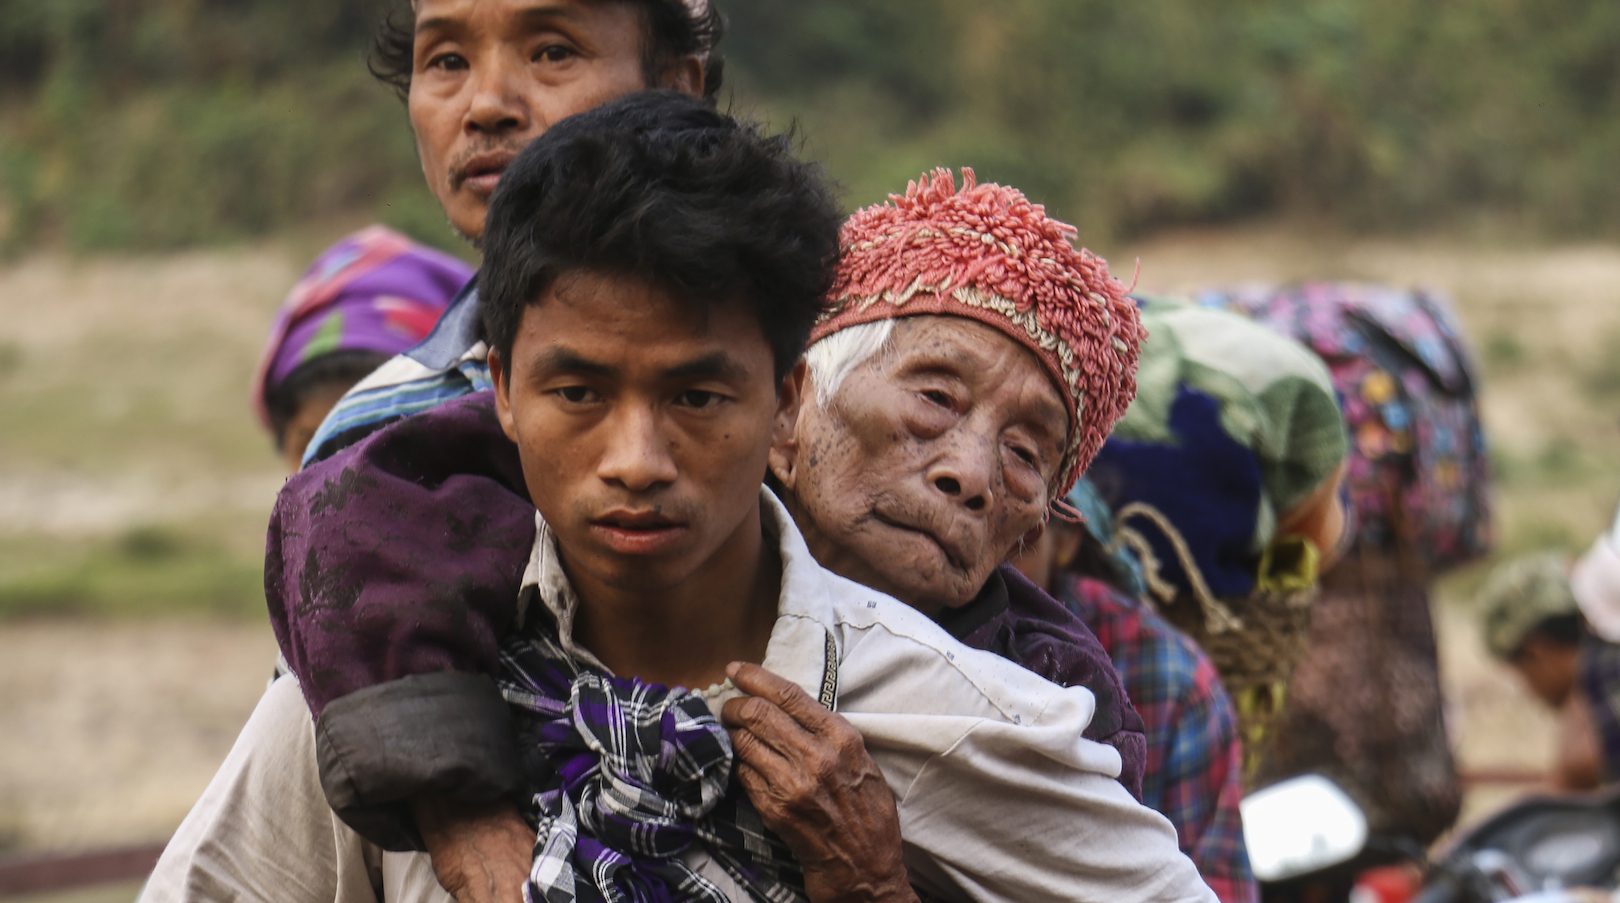 Des populations déplacés de l'État Kachin, au nord-est de la Birmanie, traversent la rivière Malikha sur un ferry pour échapper aux combats dans le village d'Injanyan près de Myitkyina, qui opposent la Kachin Independence Army (KIA) aux troupes gouvernementales birmanes, le 26 avril 2018. (Source : Time)